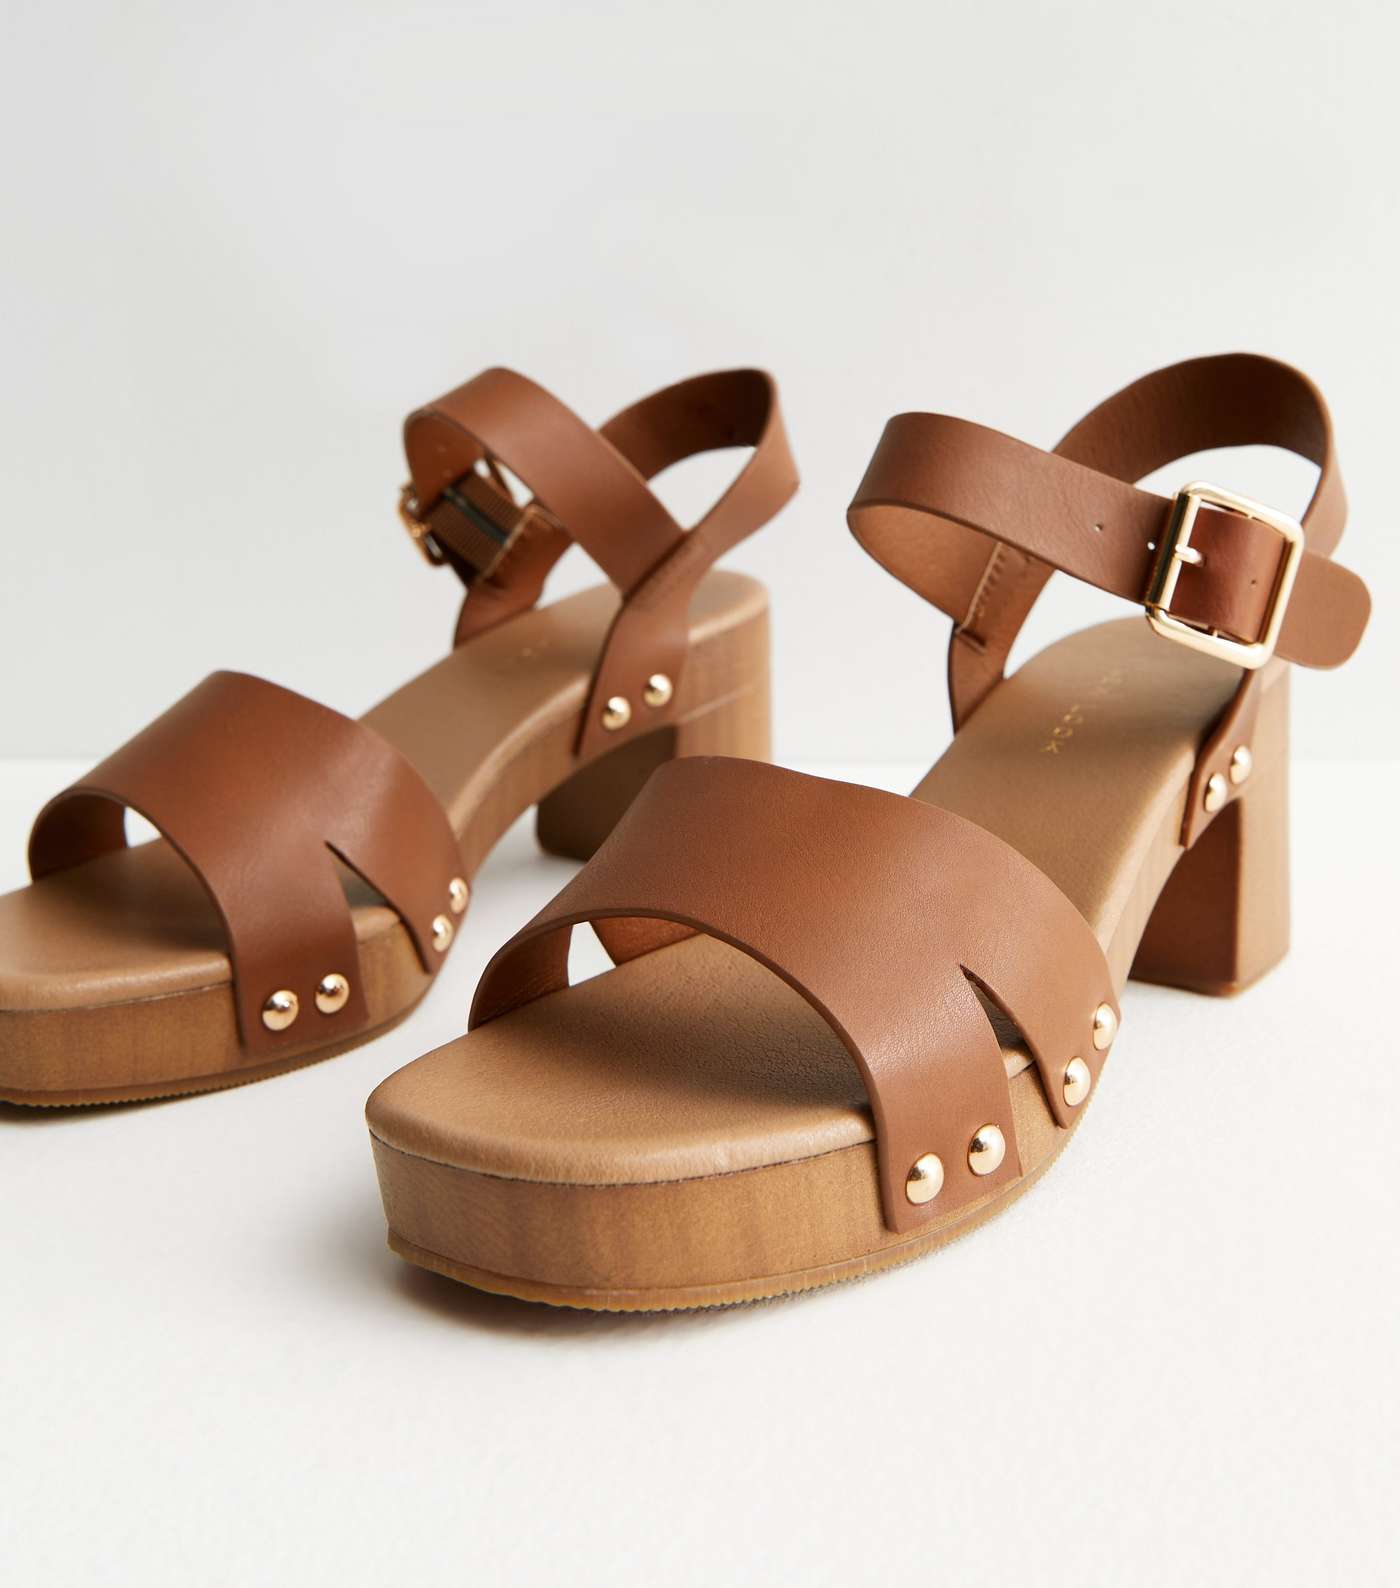 Tan Stud Embellished Mid Block Heel Sandals Image 3